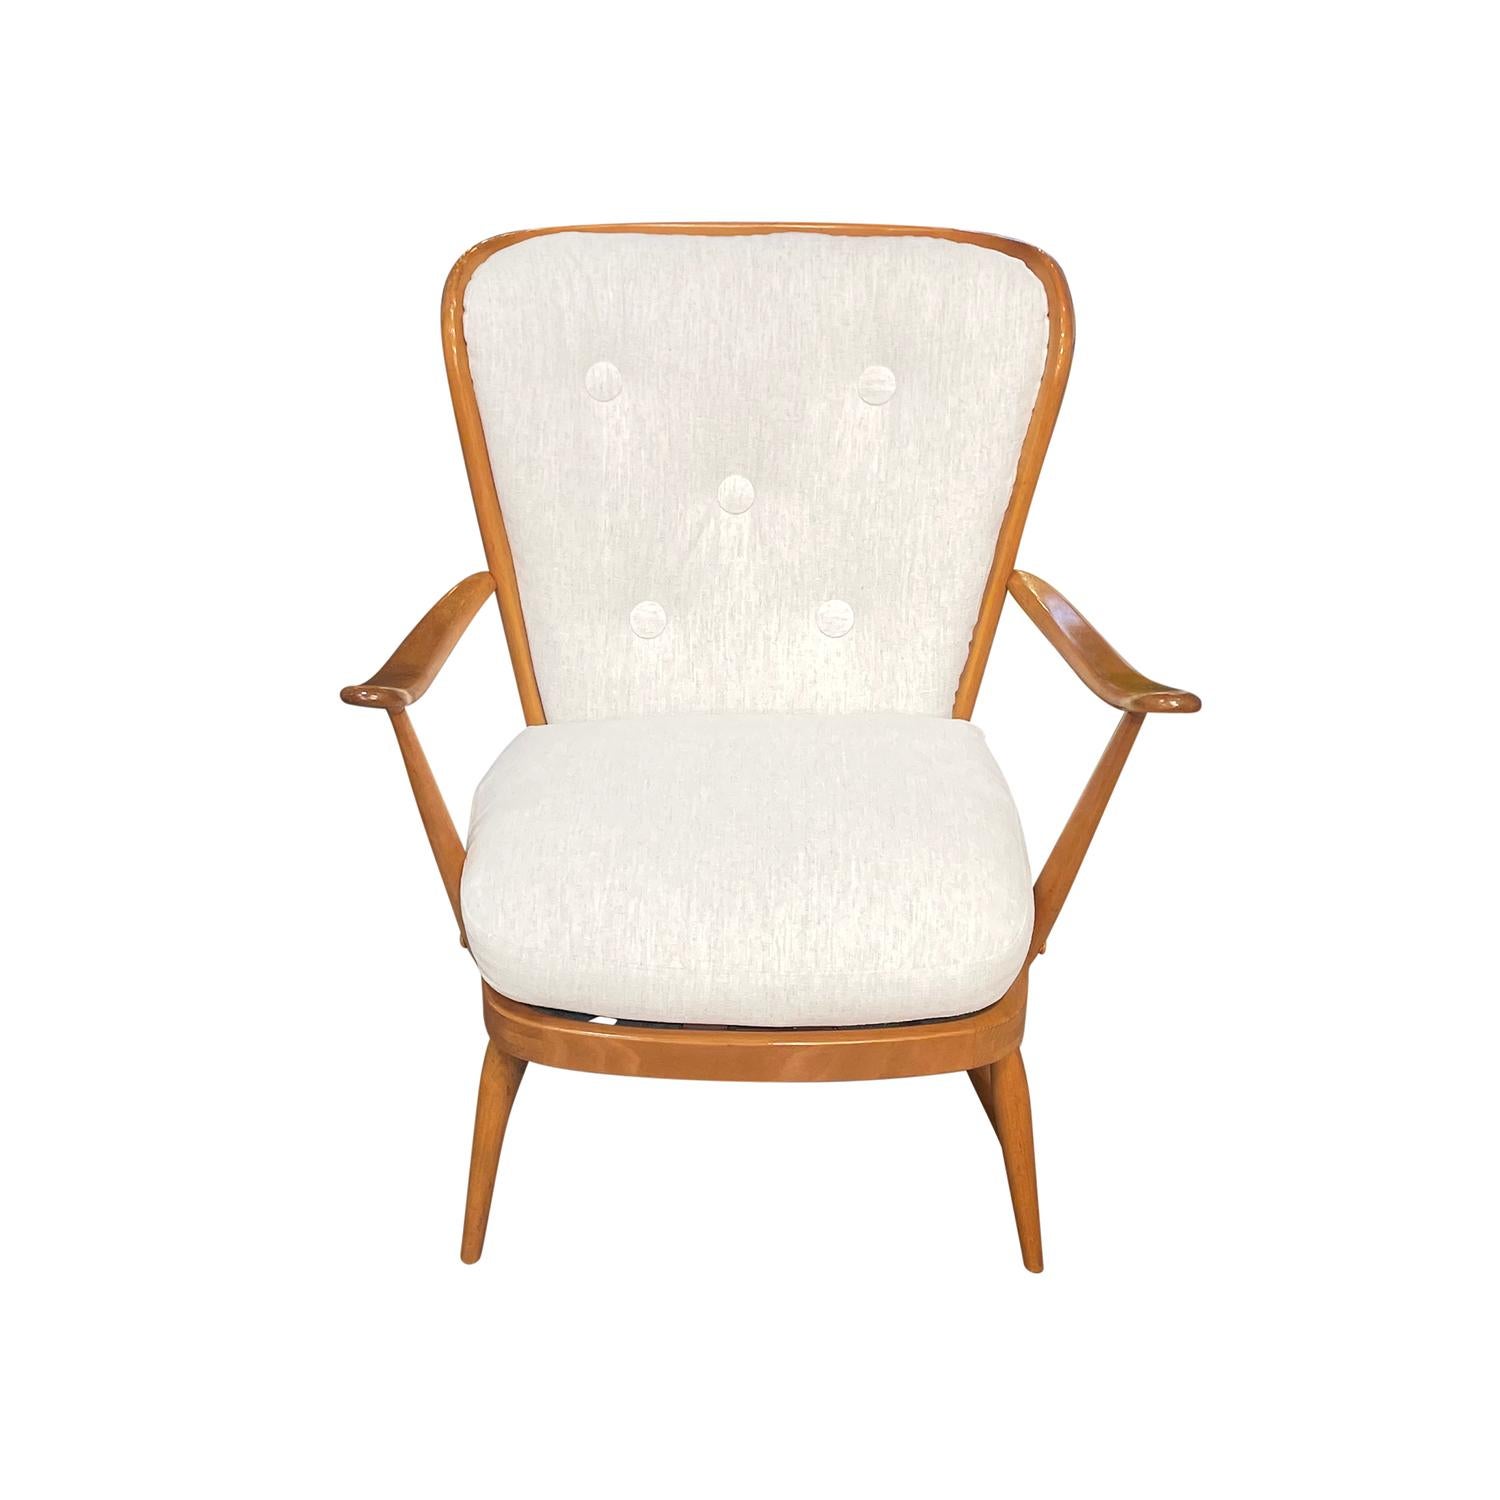 Ein einzelner englischer Sessel aus der Mitte des Jahrhunderts, handgefertigt aus poliertem Buchenholz, entworfen und hergestellt von Ercol, in gutem Zustand. Der niedrige britische Beistellstuhl hat eine offene, spindelförmige, zurückgelehnte